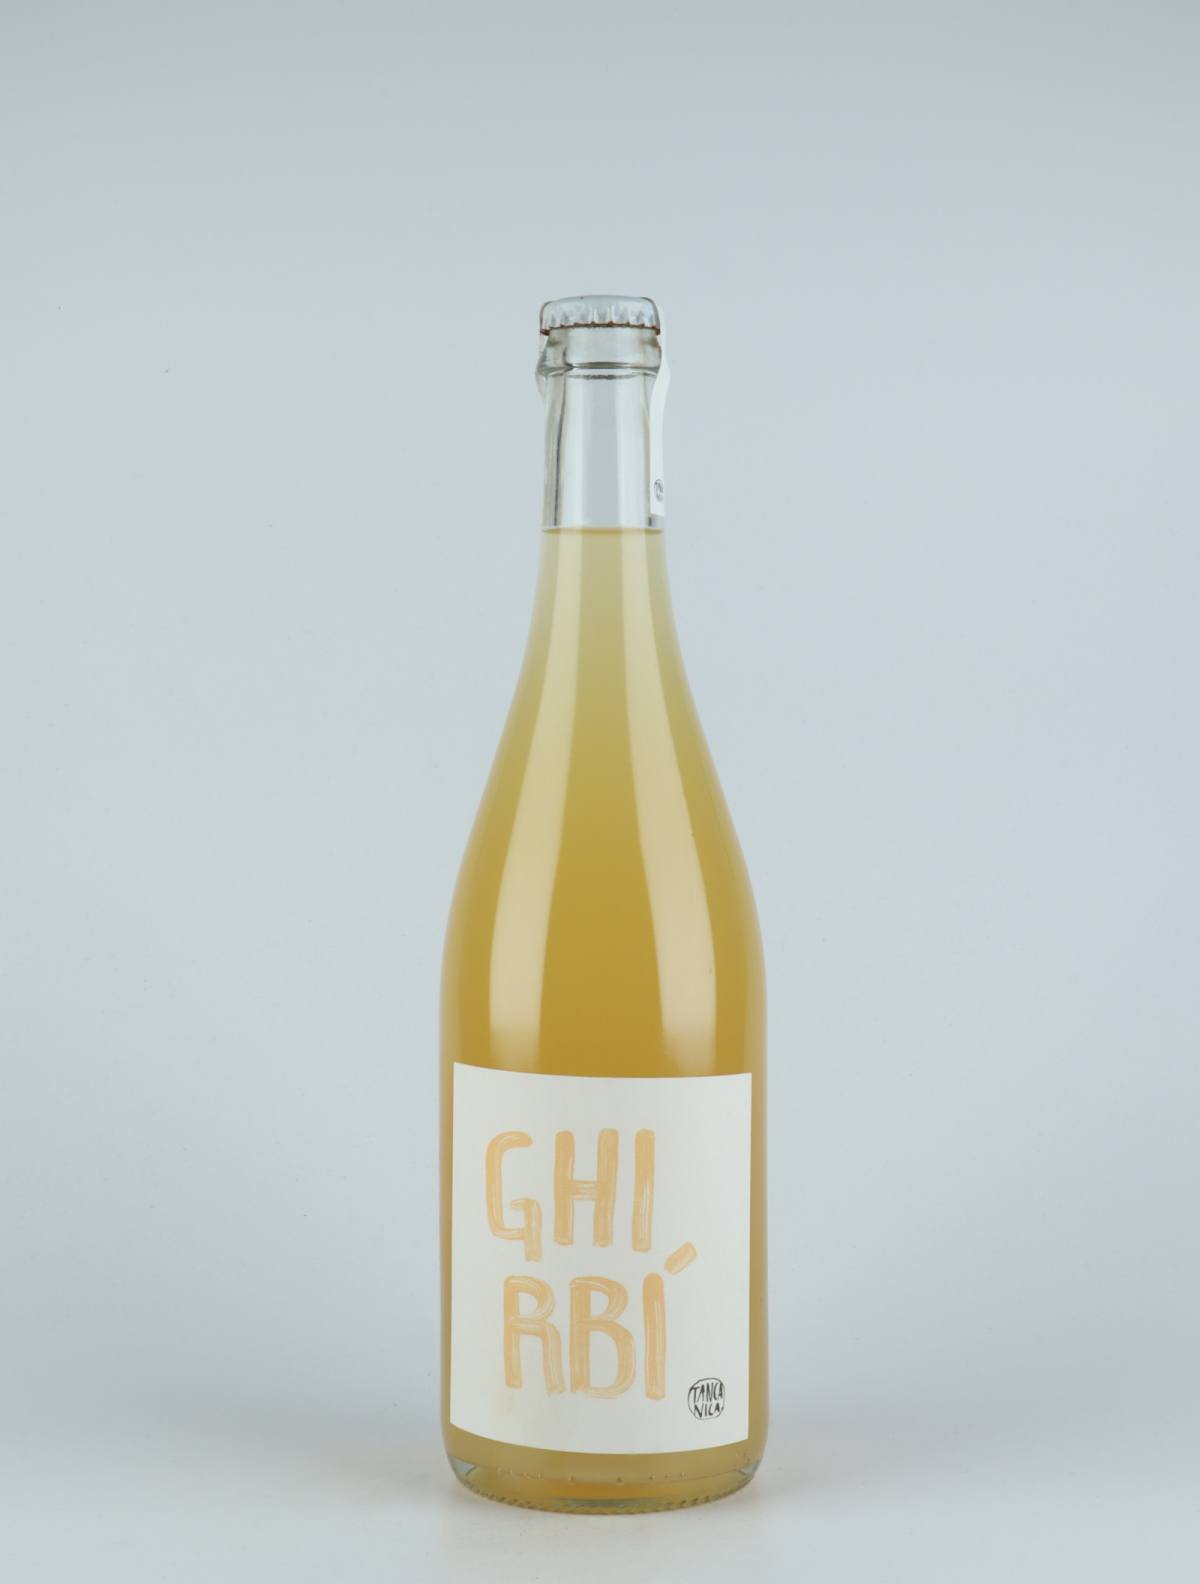 En flaske 2018 Ghirbi Mousserende fra Tanca Nica, Sicilien i Italien